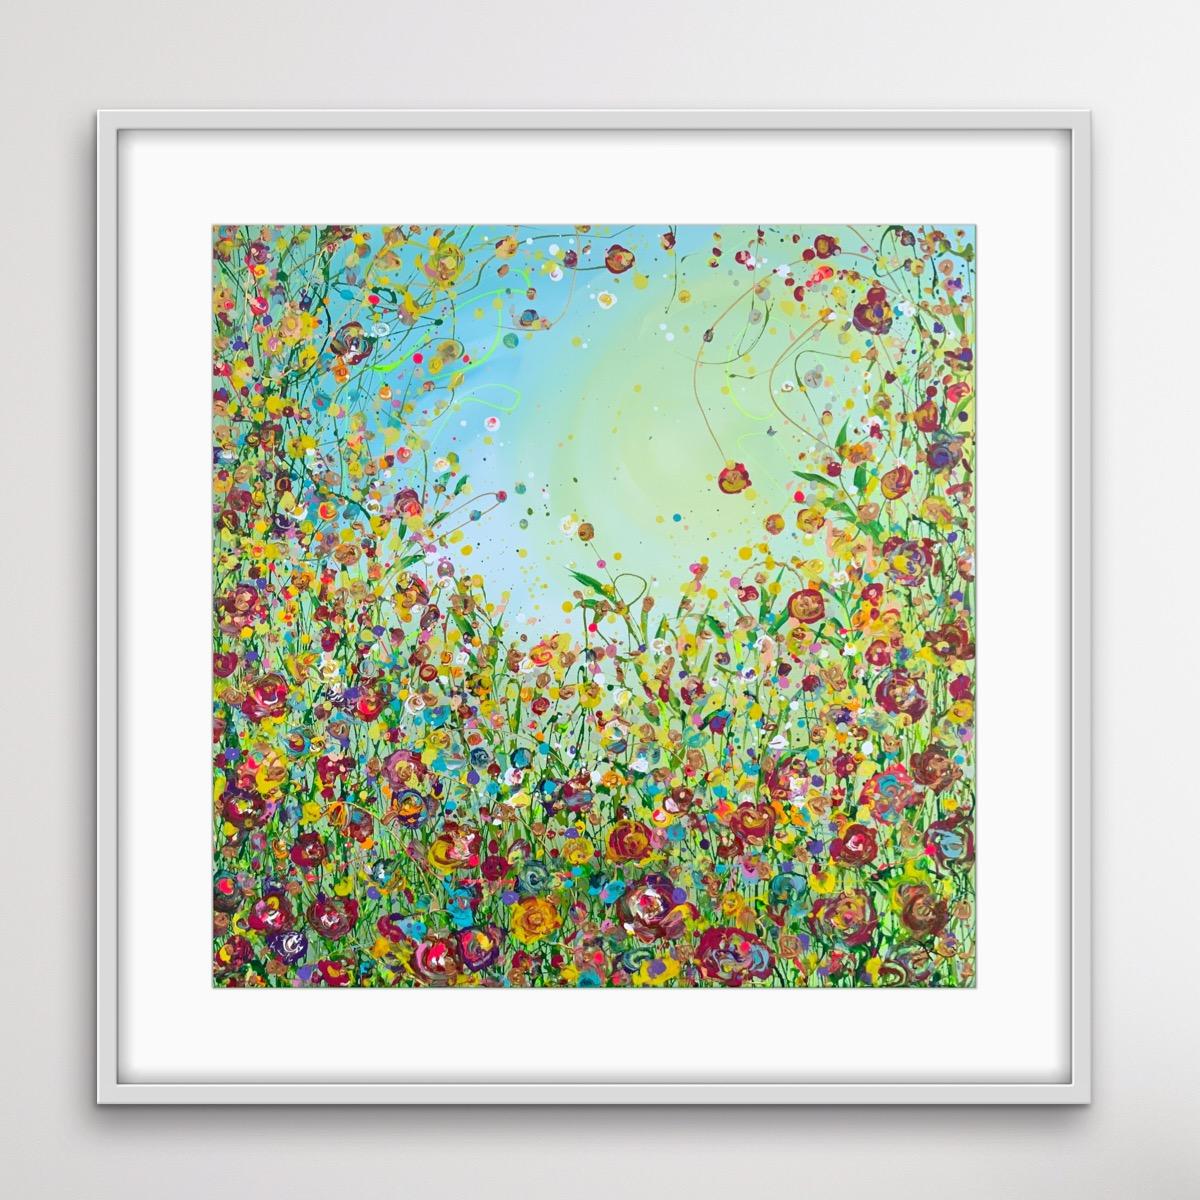 Un ensemble coloré de fleurs de prairies sauvages. Peint dans un style expressif et abstrait. Peint avec énergie et passion pour le sujet. Inspiré par mon amour des couleurs, des motifs et des fleurs. Peint sur une toile tendue de qualité